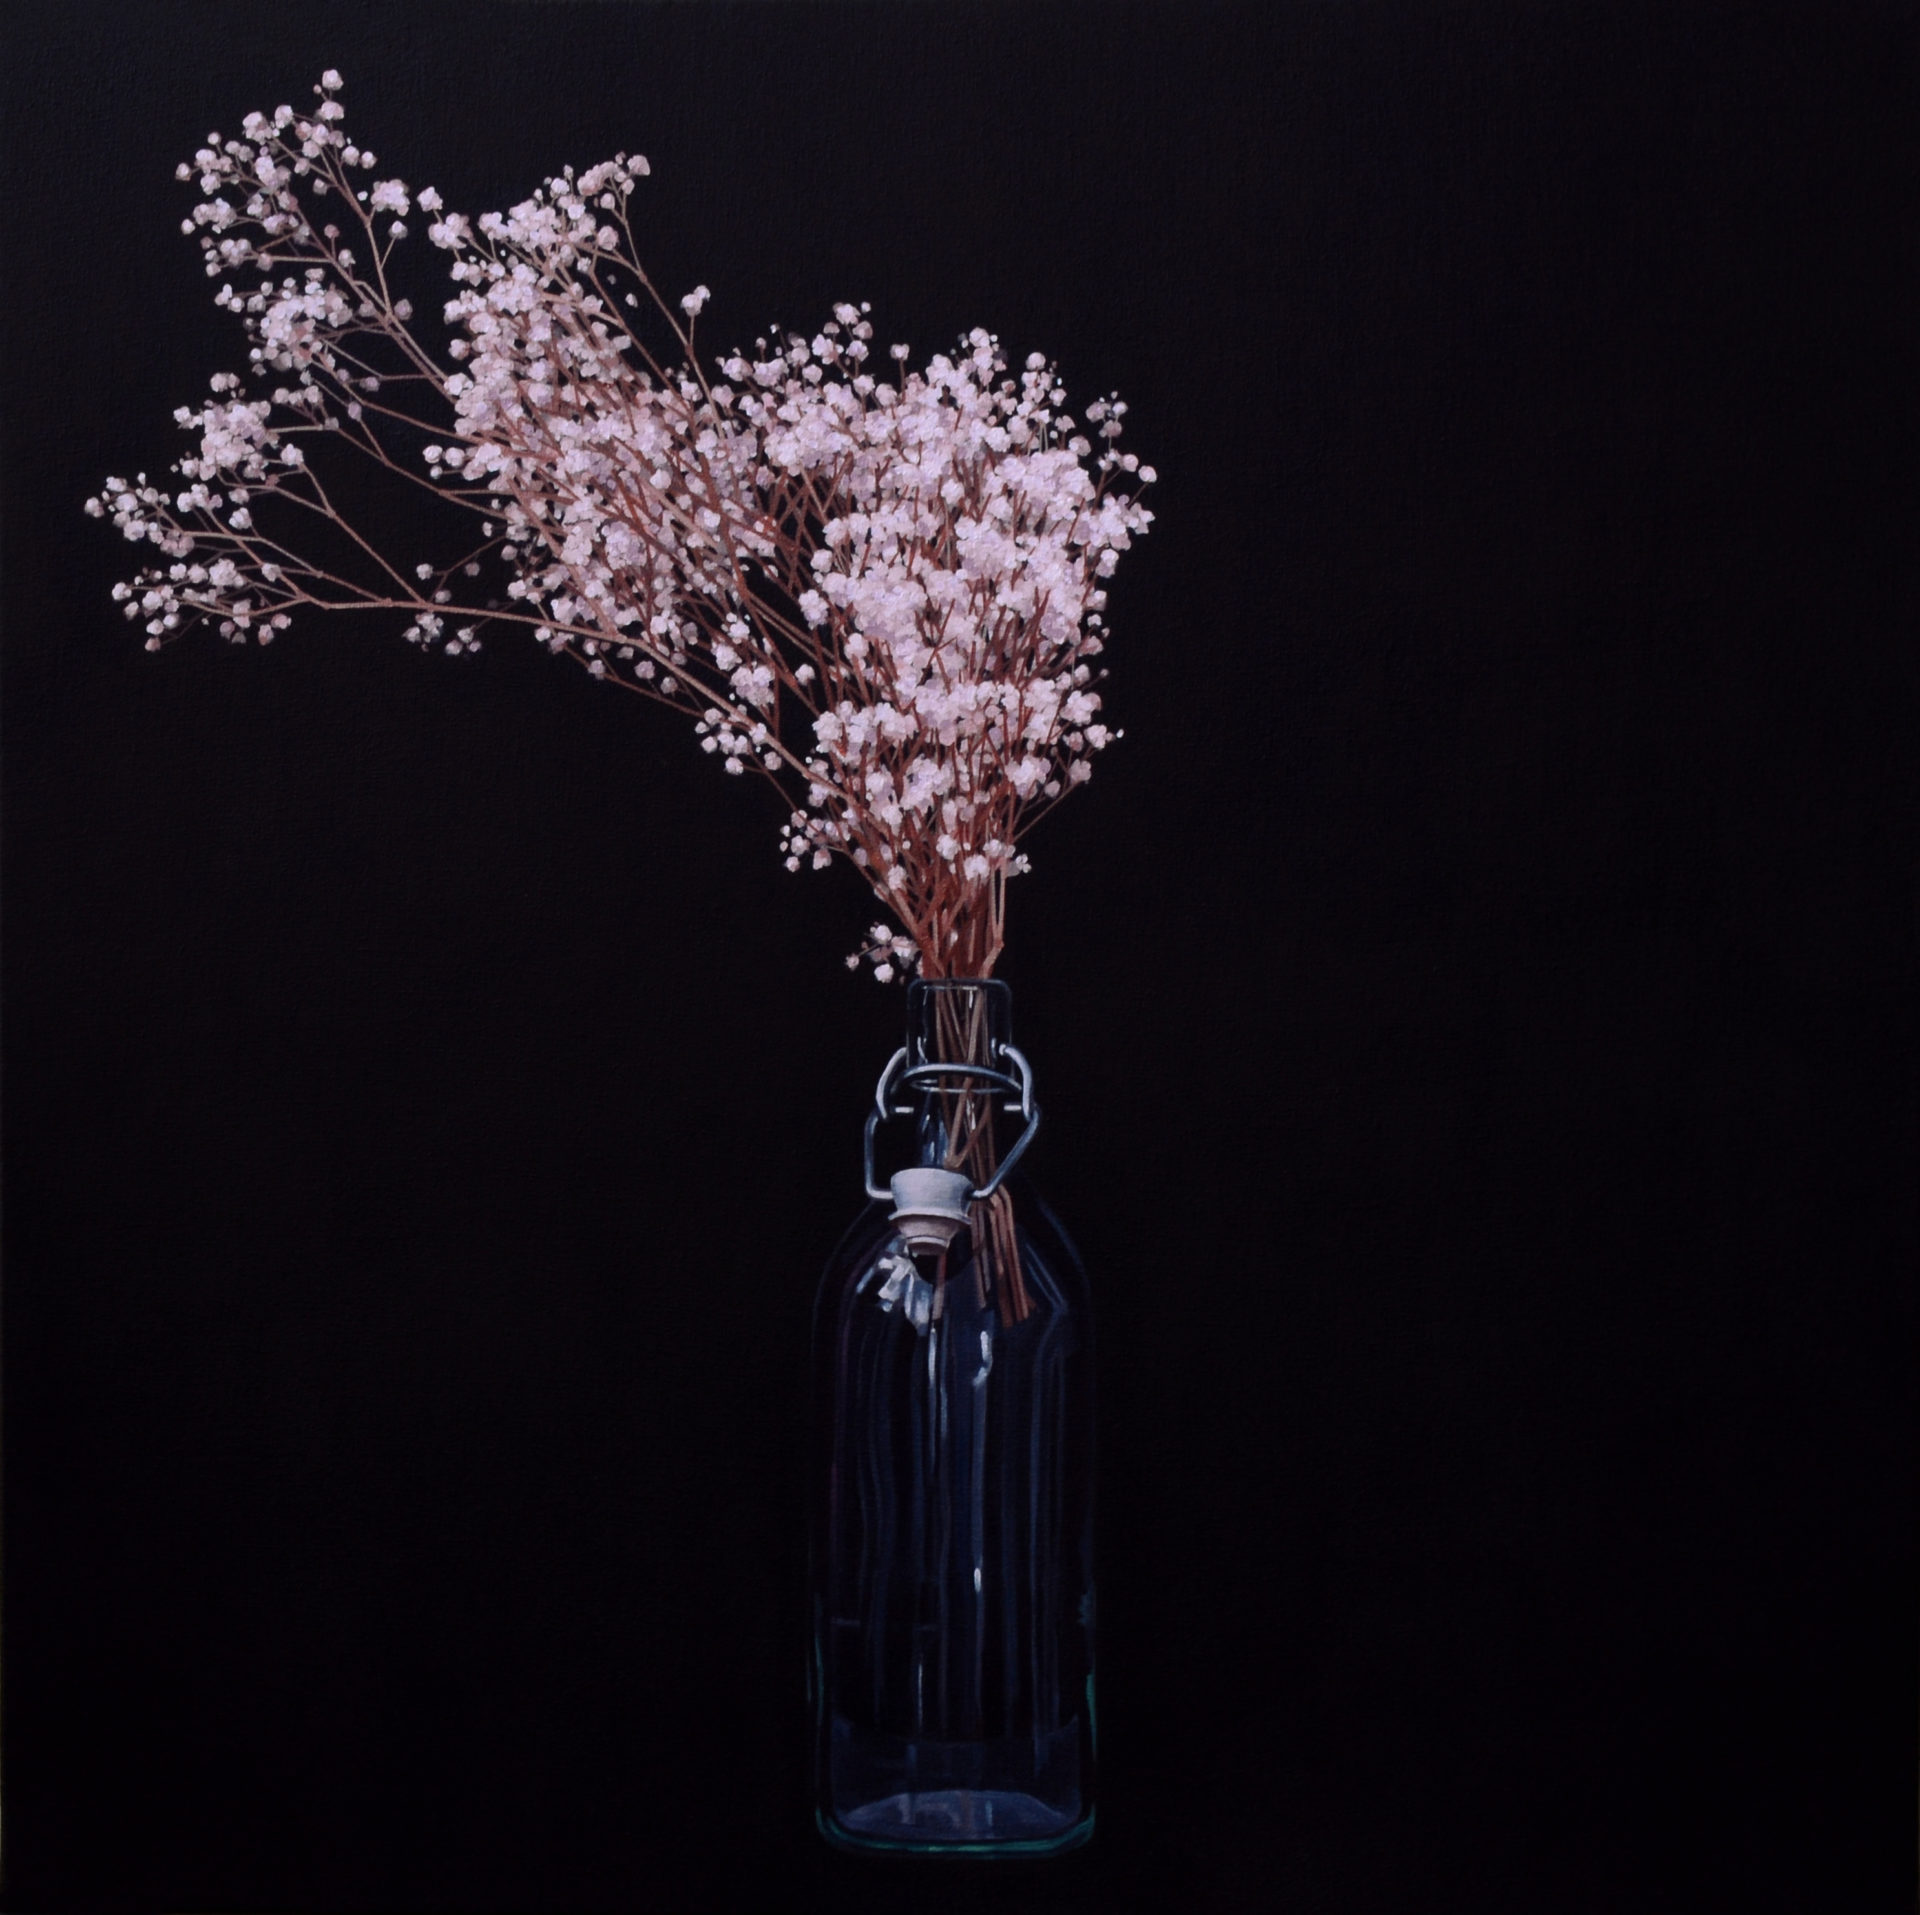 Le vase, huile sur toile, 80 x 80 cm, 2018, Collection privée